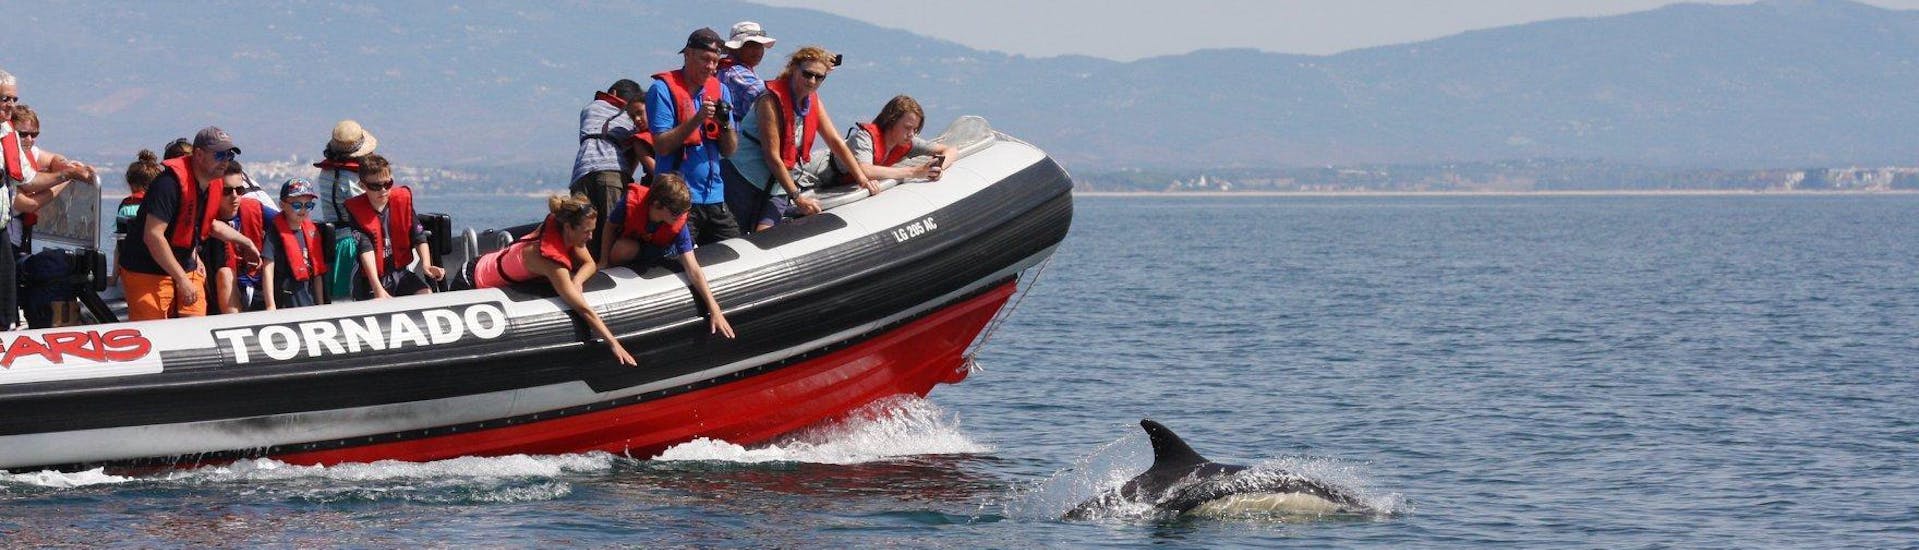 Durante un paseo en barco para ver delfines en Portimao con Seafaris Algarve, los visitantes admiran a los simpáticos animales desde el barco.